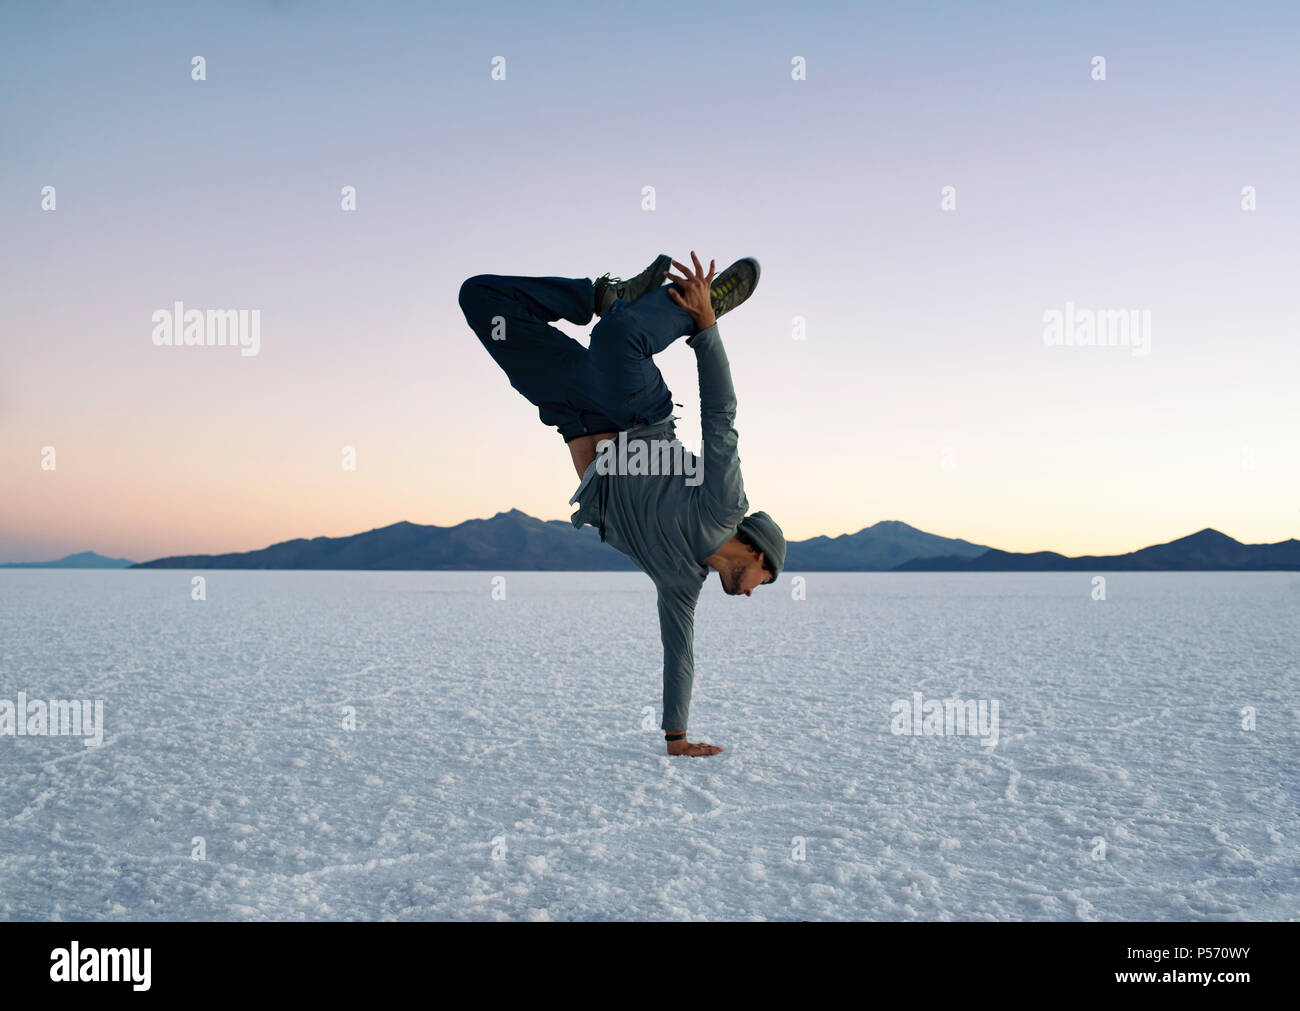 Ragazzo facendo un braccio handstand durante il tramonto. Salar de Uyuni (saline), Bolivia. Uno stile di vita attivo, danza, fitness, avventura. Giu 2018 Foto Stock